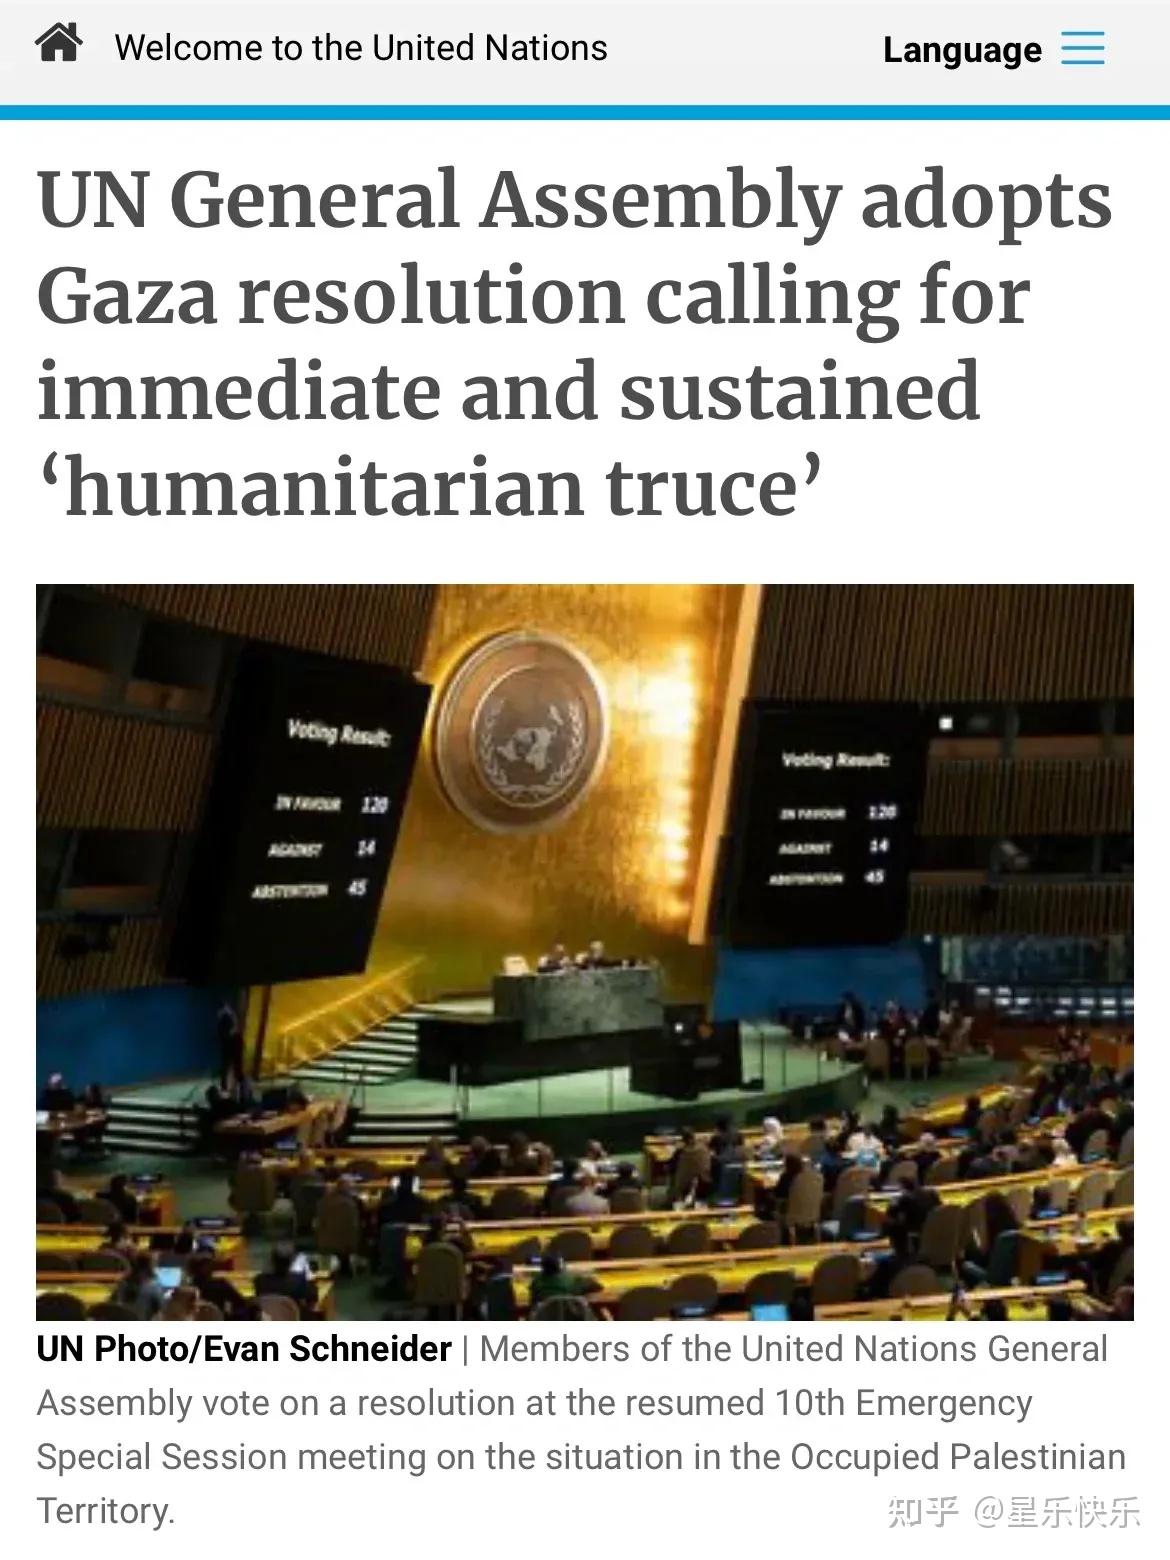 以色列常驻联合国代表呼吁安理会承认哈马斯为恐怖组织 - 2018年5月30日, 俄罗斯卫星通讯社